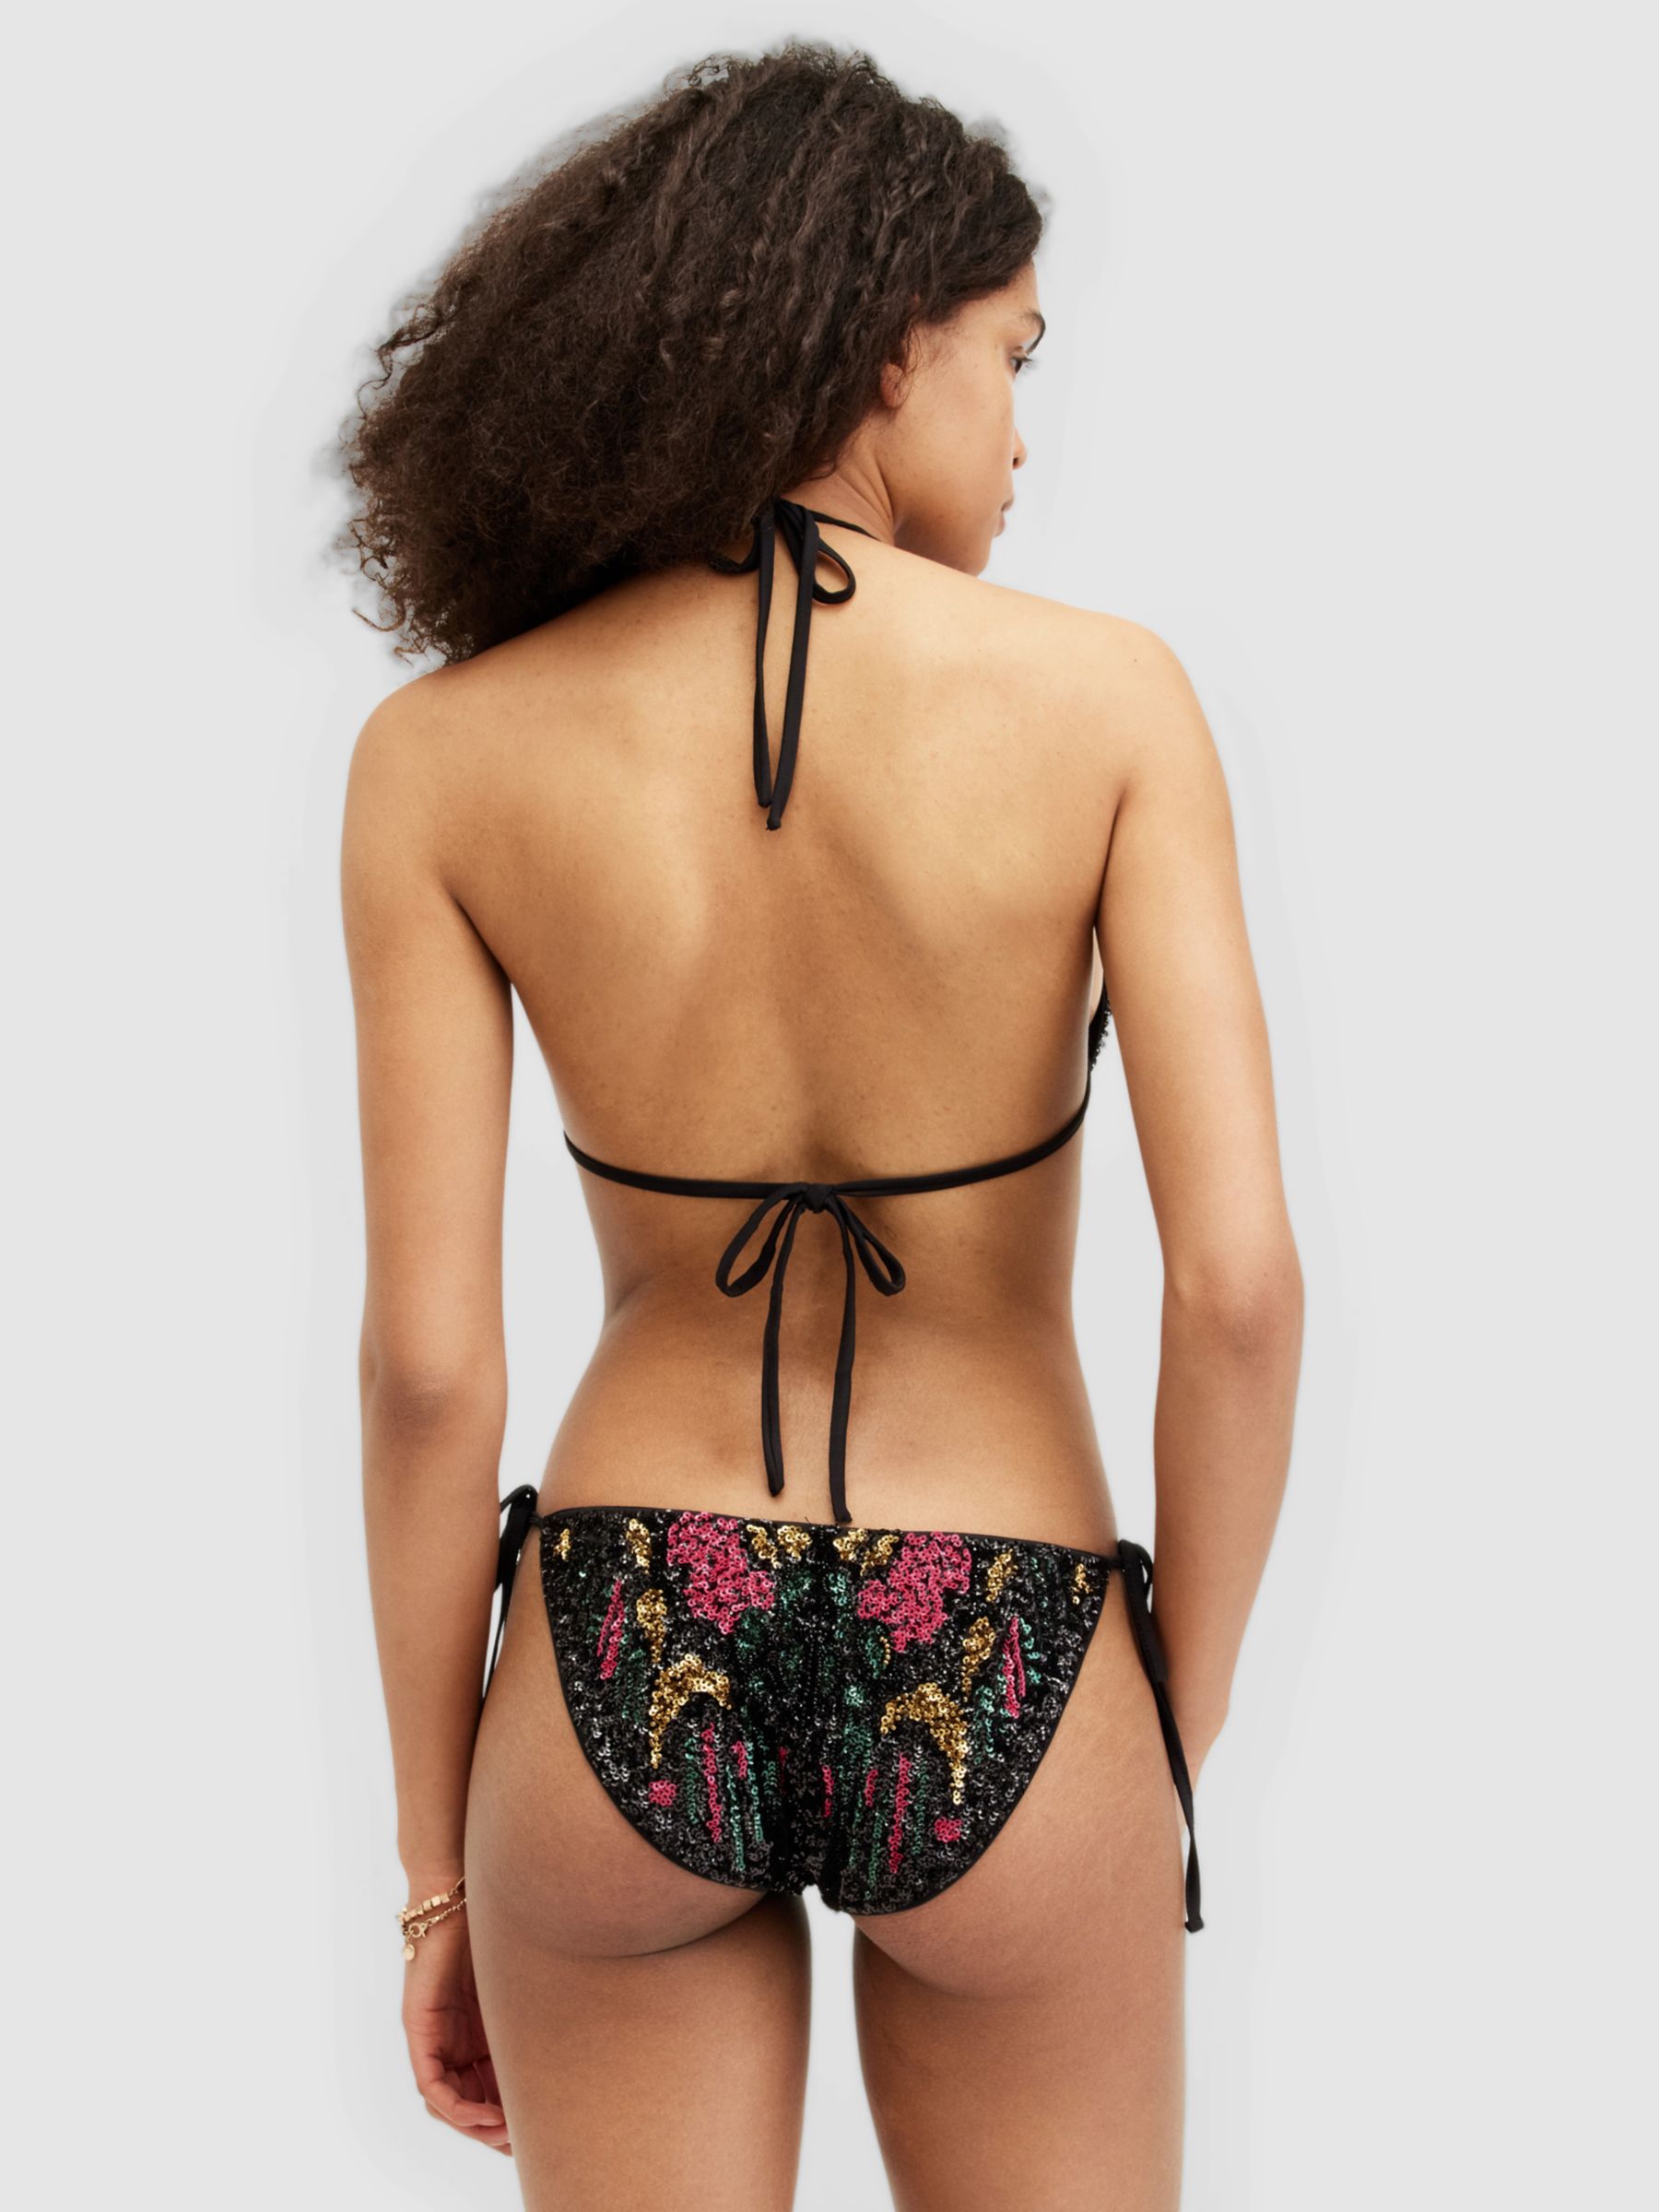 AllSaints Jamilia Sequin Embroidery Side Tie Bikini Bottoms, Black/Multi, 10